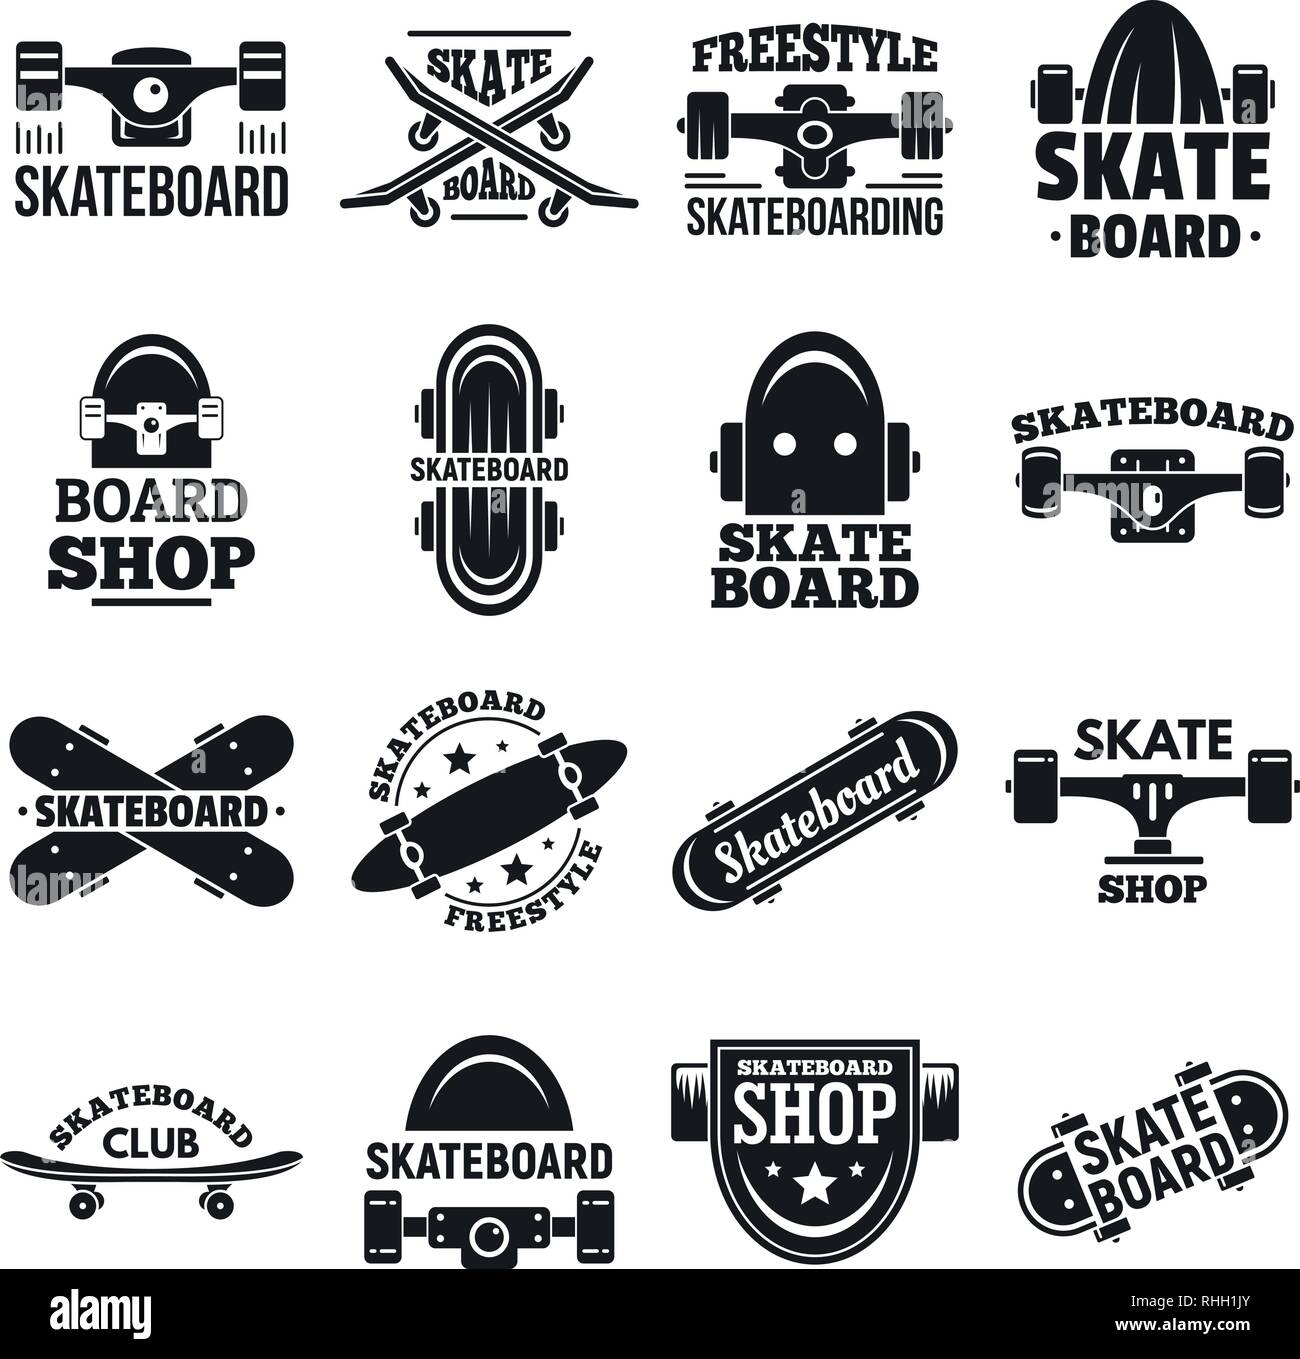 Skateboard logo set. Simple set of skateboard vector logo for web design on  white background Stock Vector Image & Art - Alamy